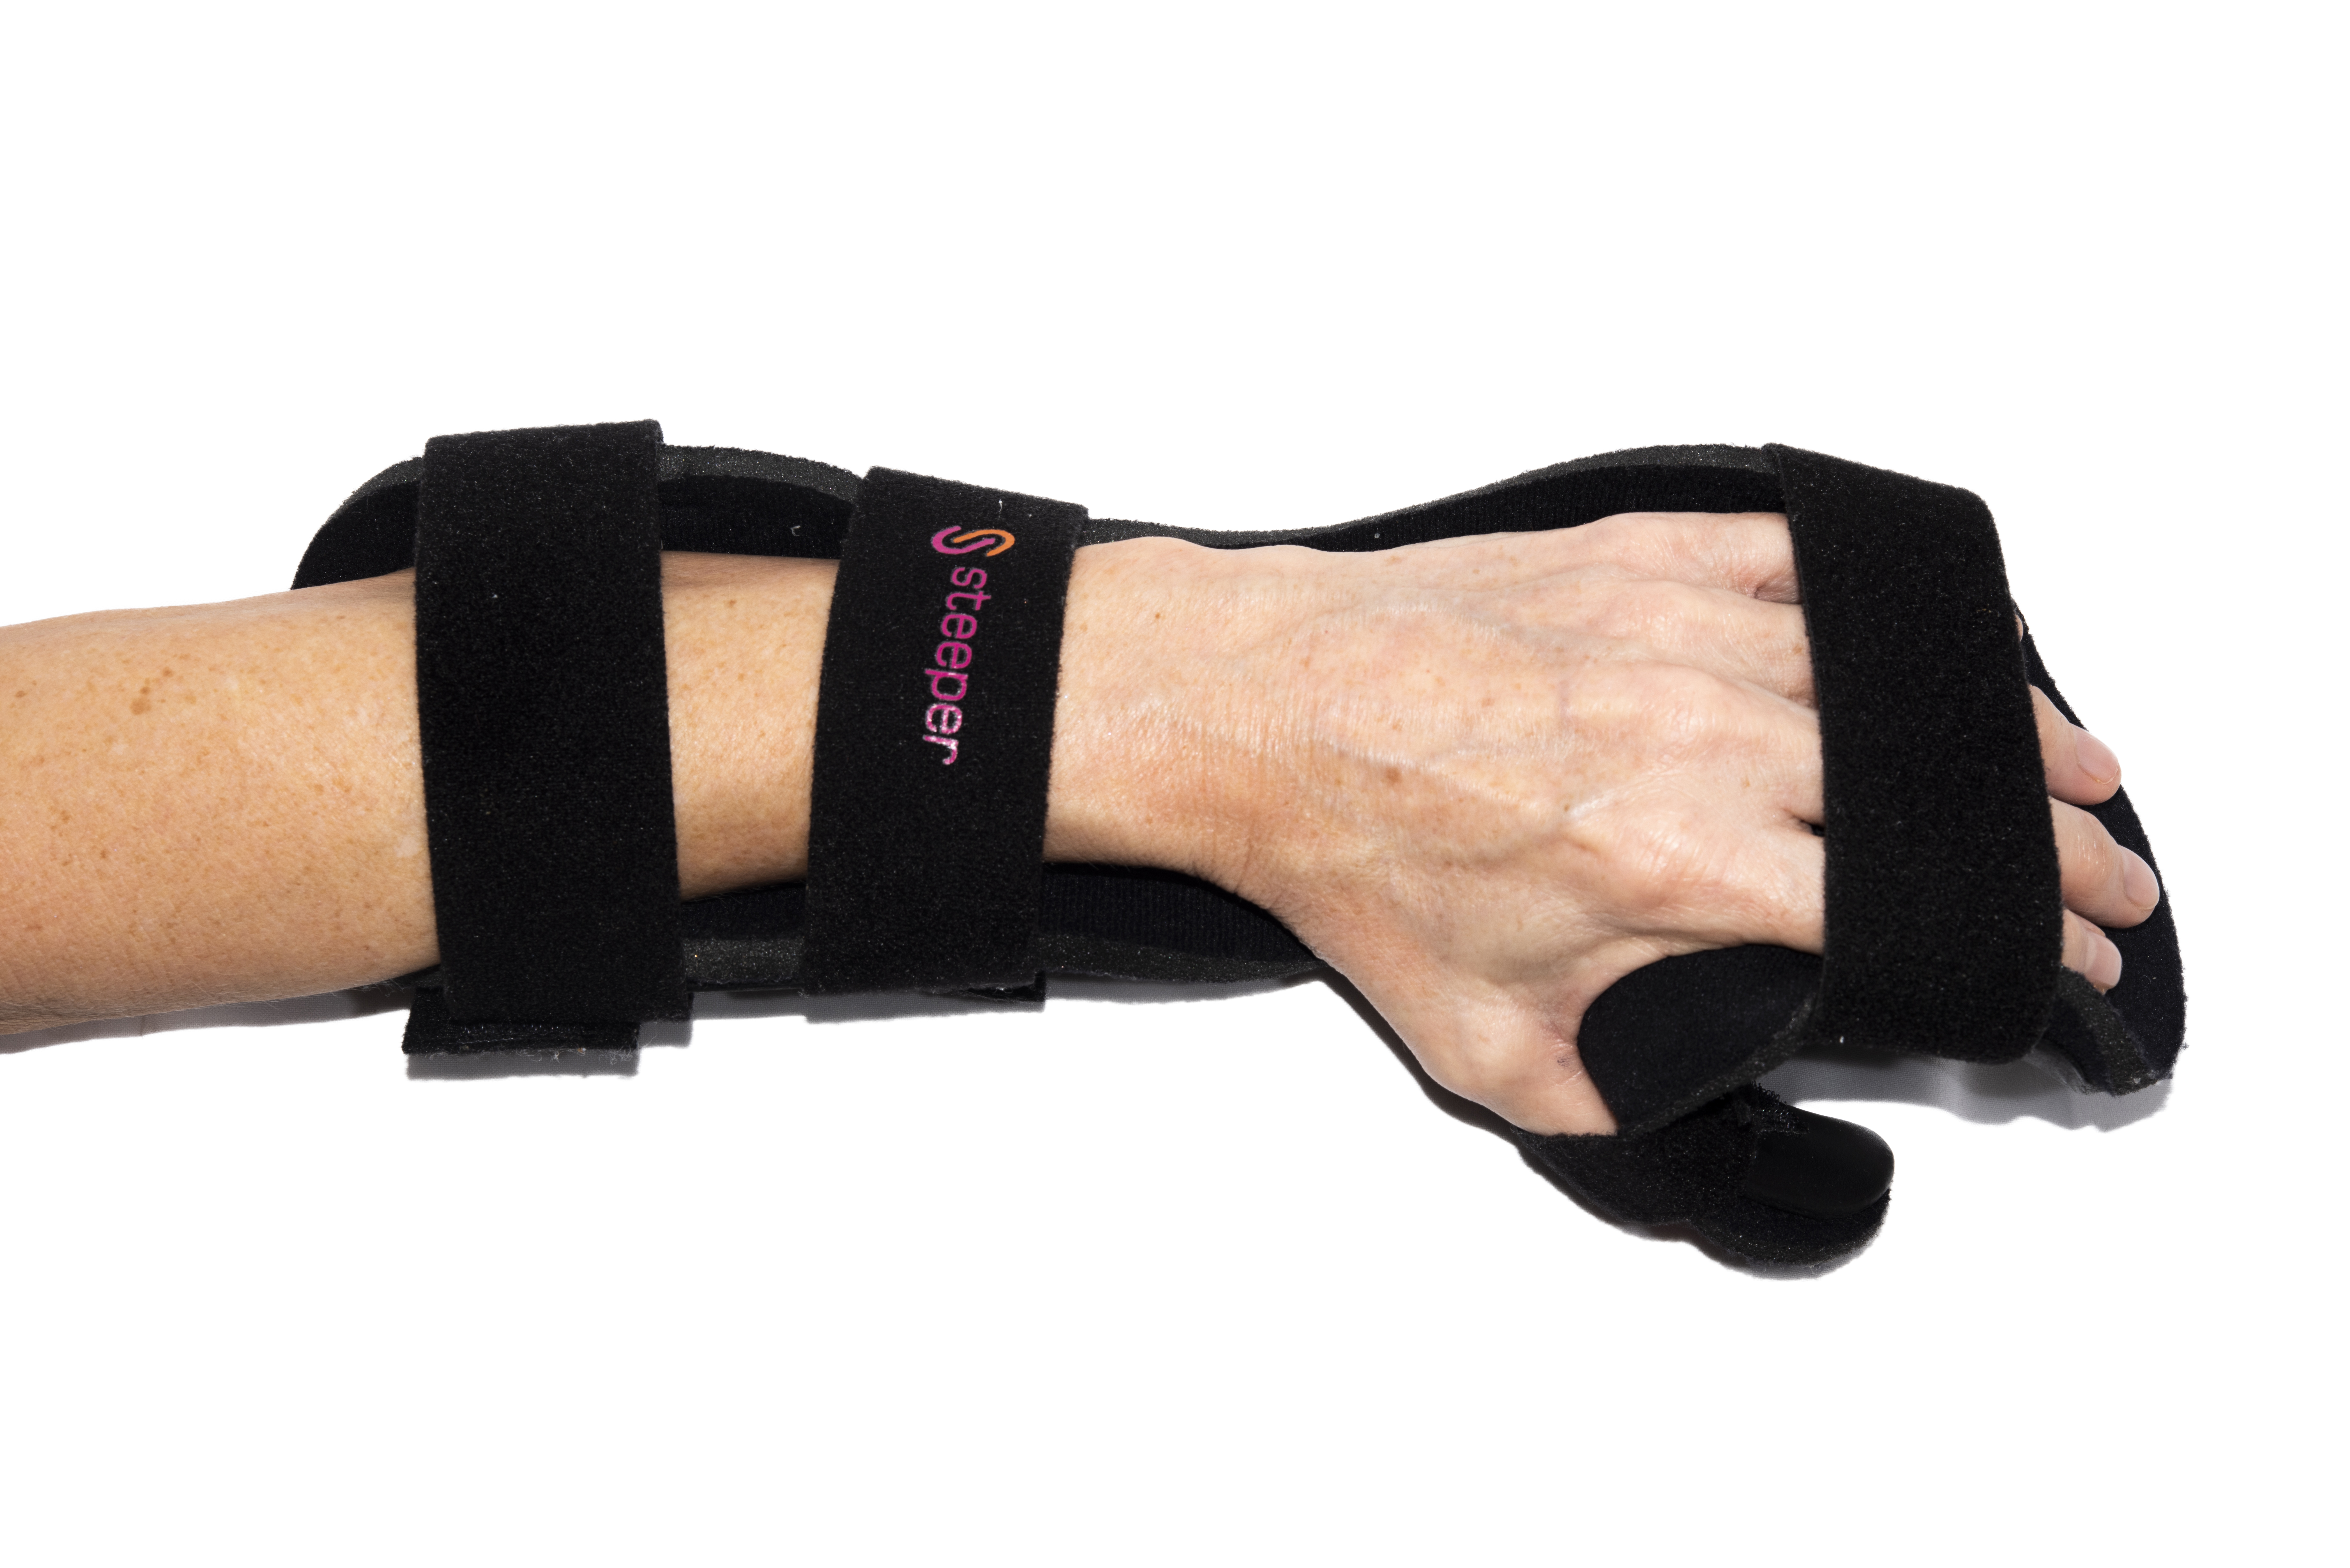 A hand / wrist splint